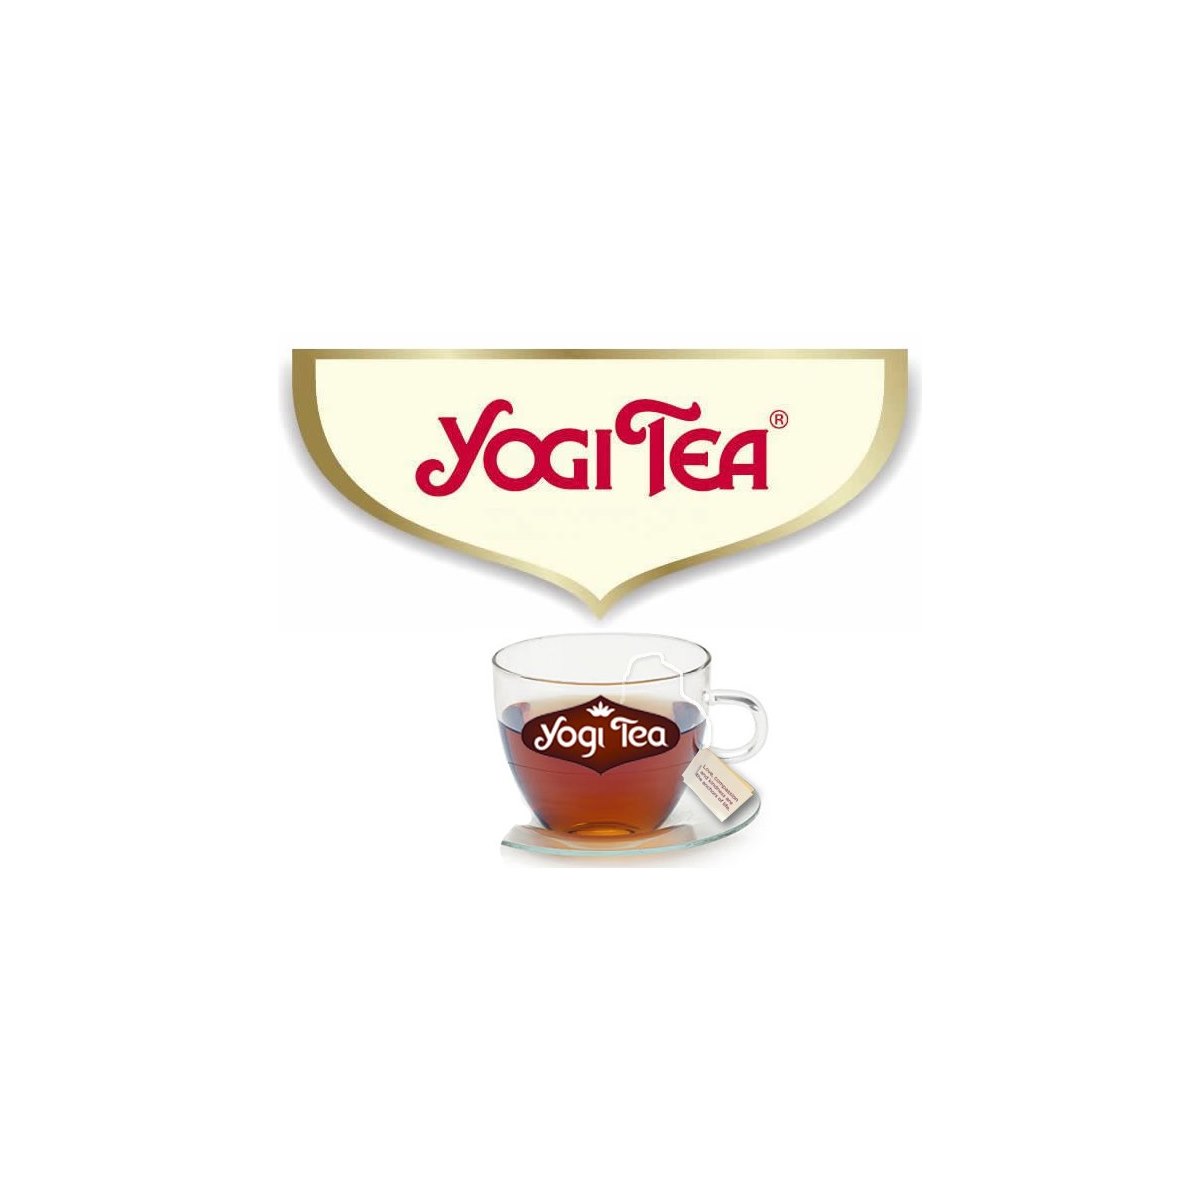 Where to Buy Yogi Tea Online